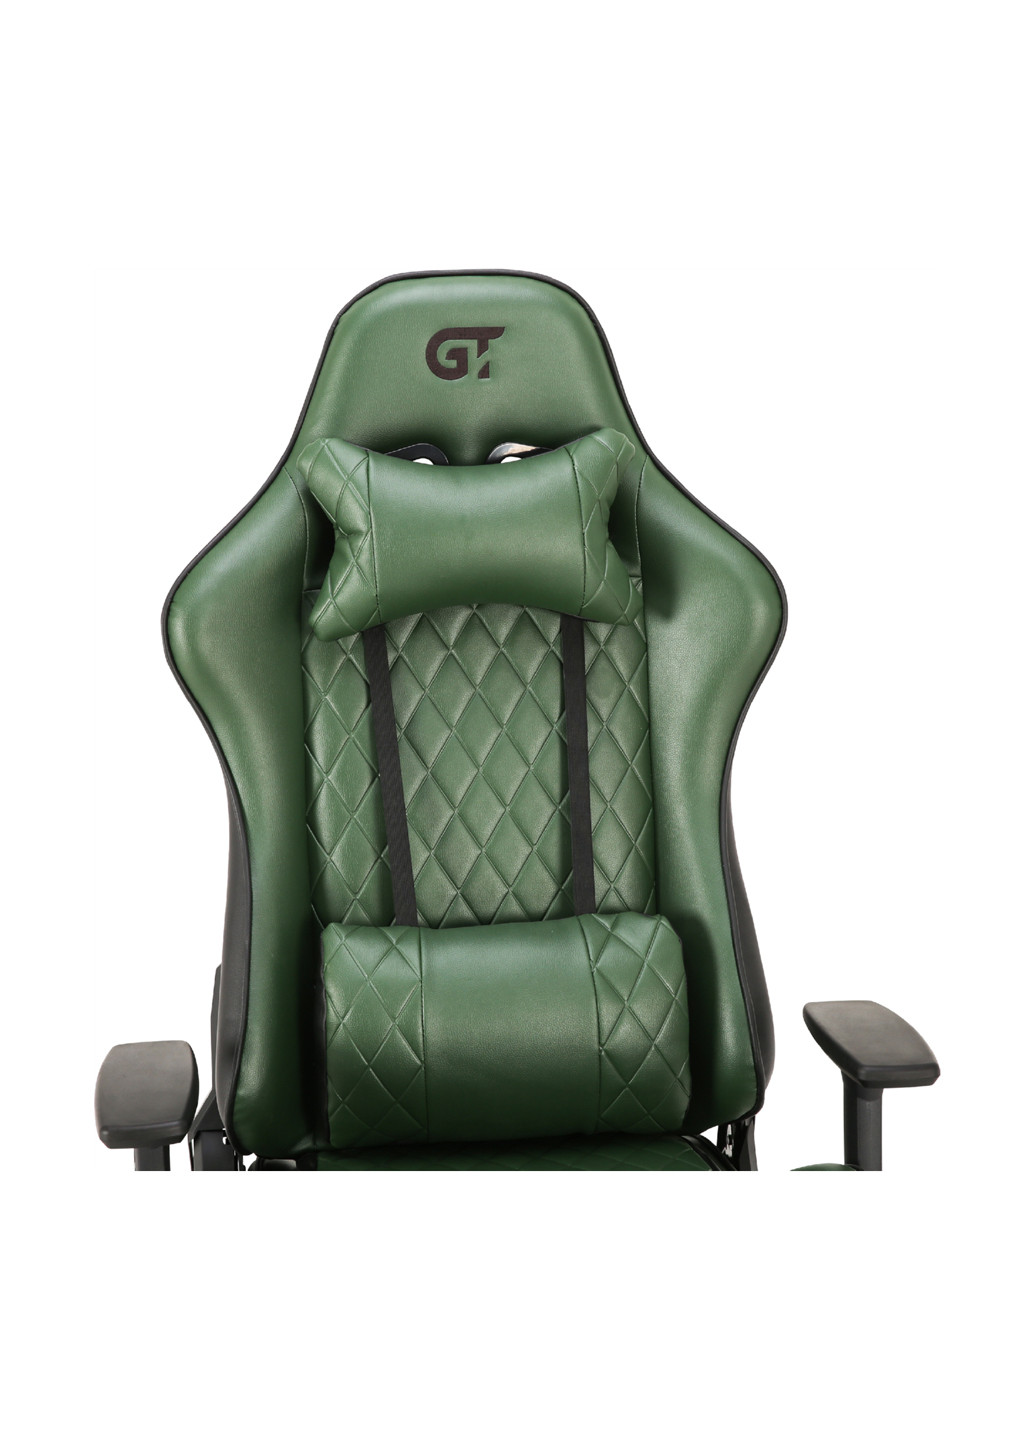 Геймерське крісло X-2540 Black / Dark Green GT Racer x-2540 black/dark green (177294934)